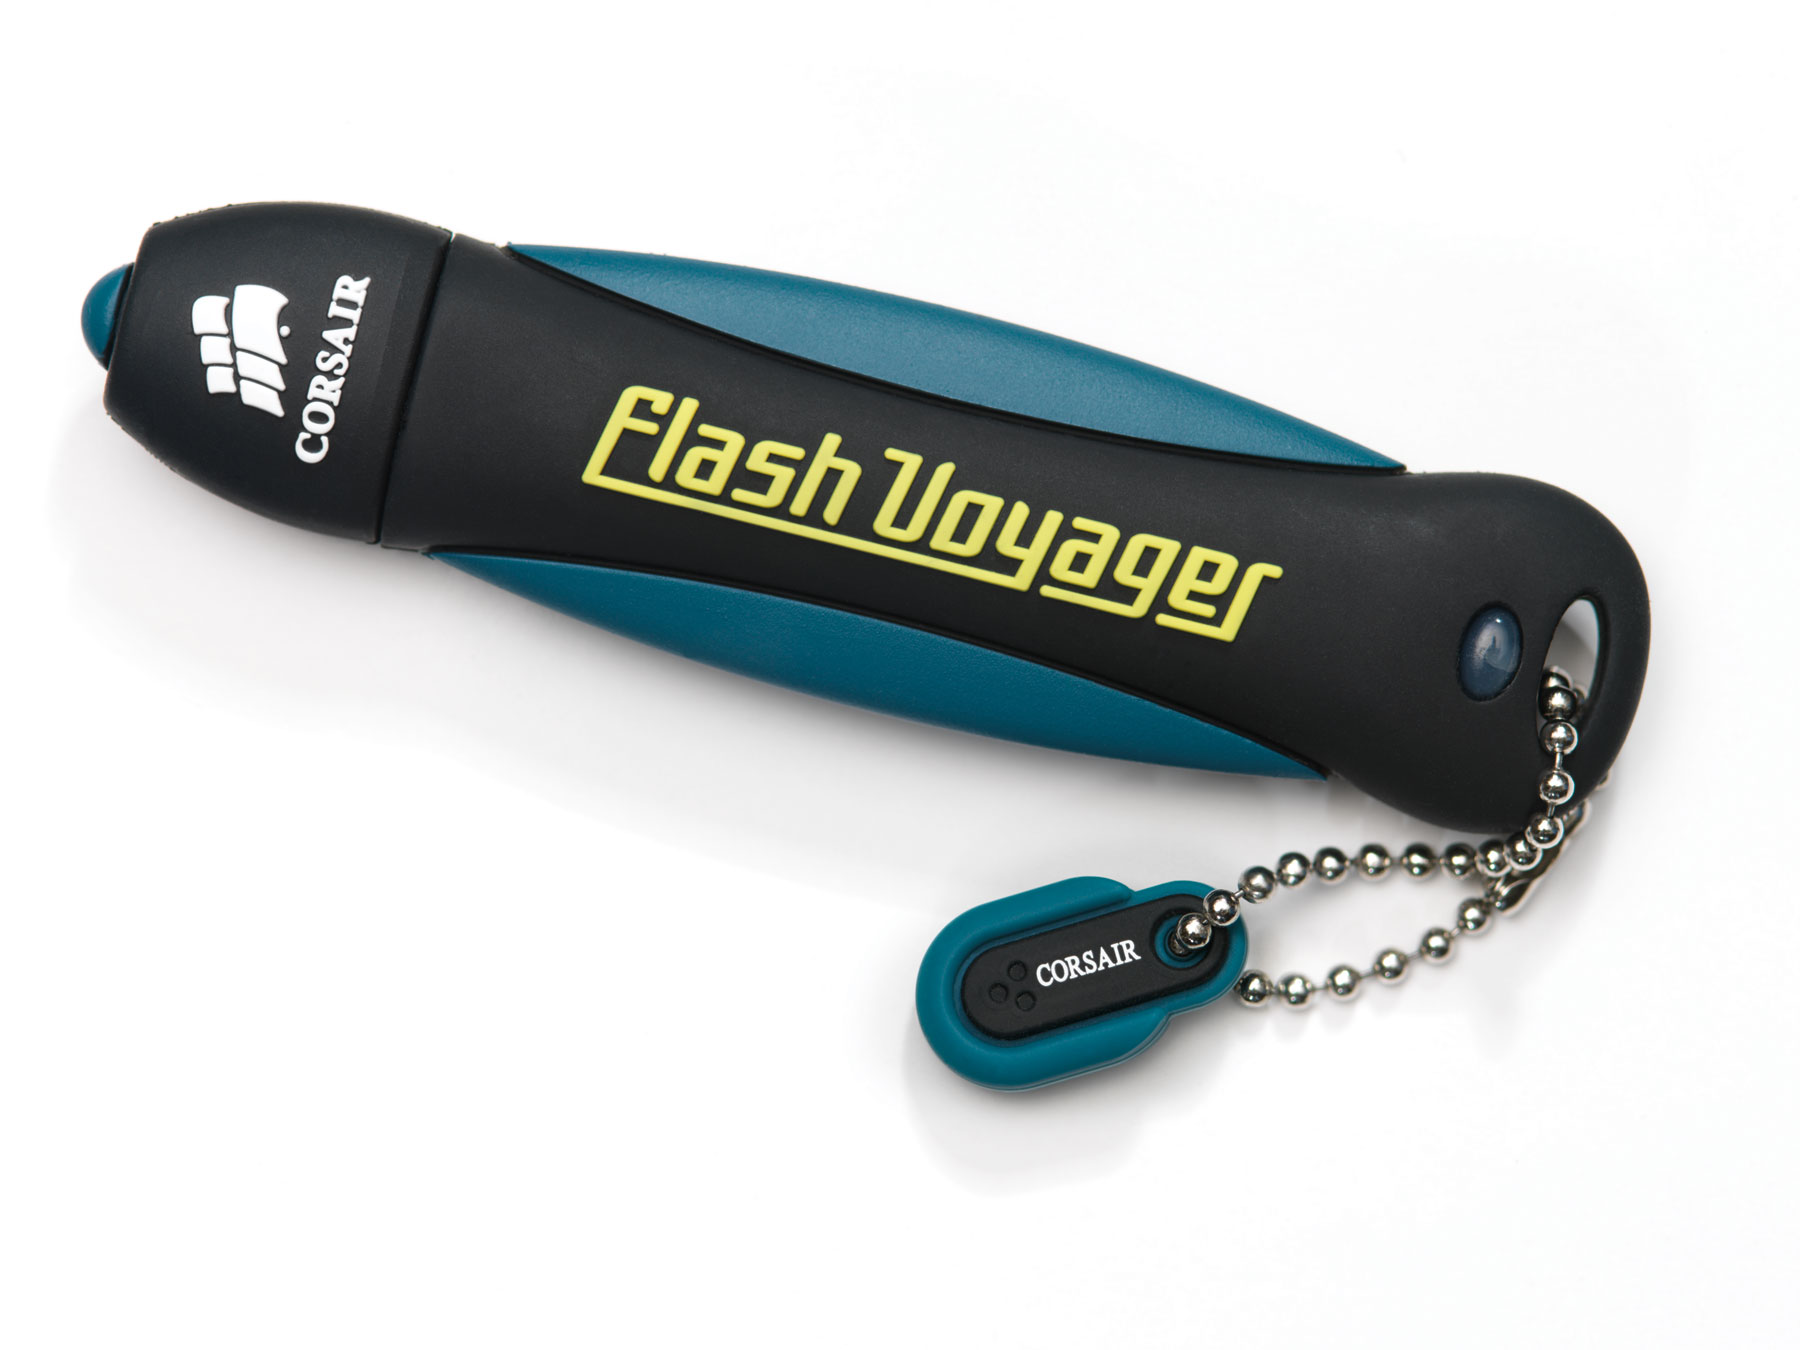 Immagine pubblicata in relazione al seguente contenuto: Corsair lancia il drive Flash Voyager USB con capacit di 64GB | Nome immagine: news8703_1.jpg